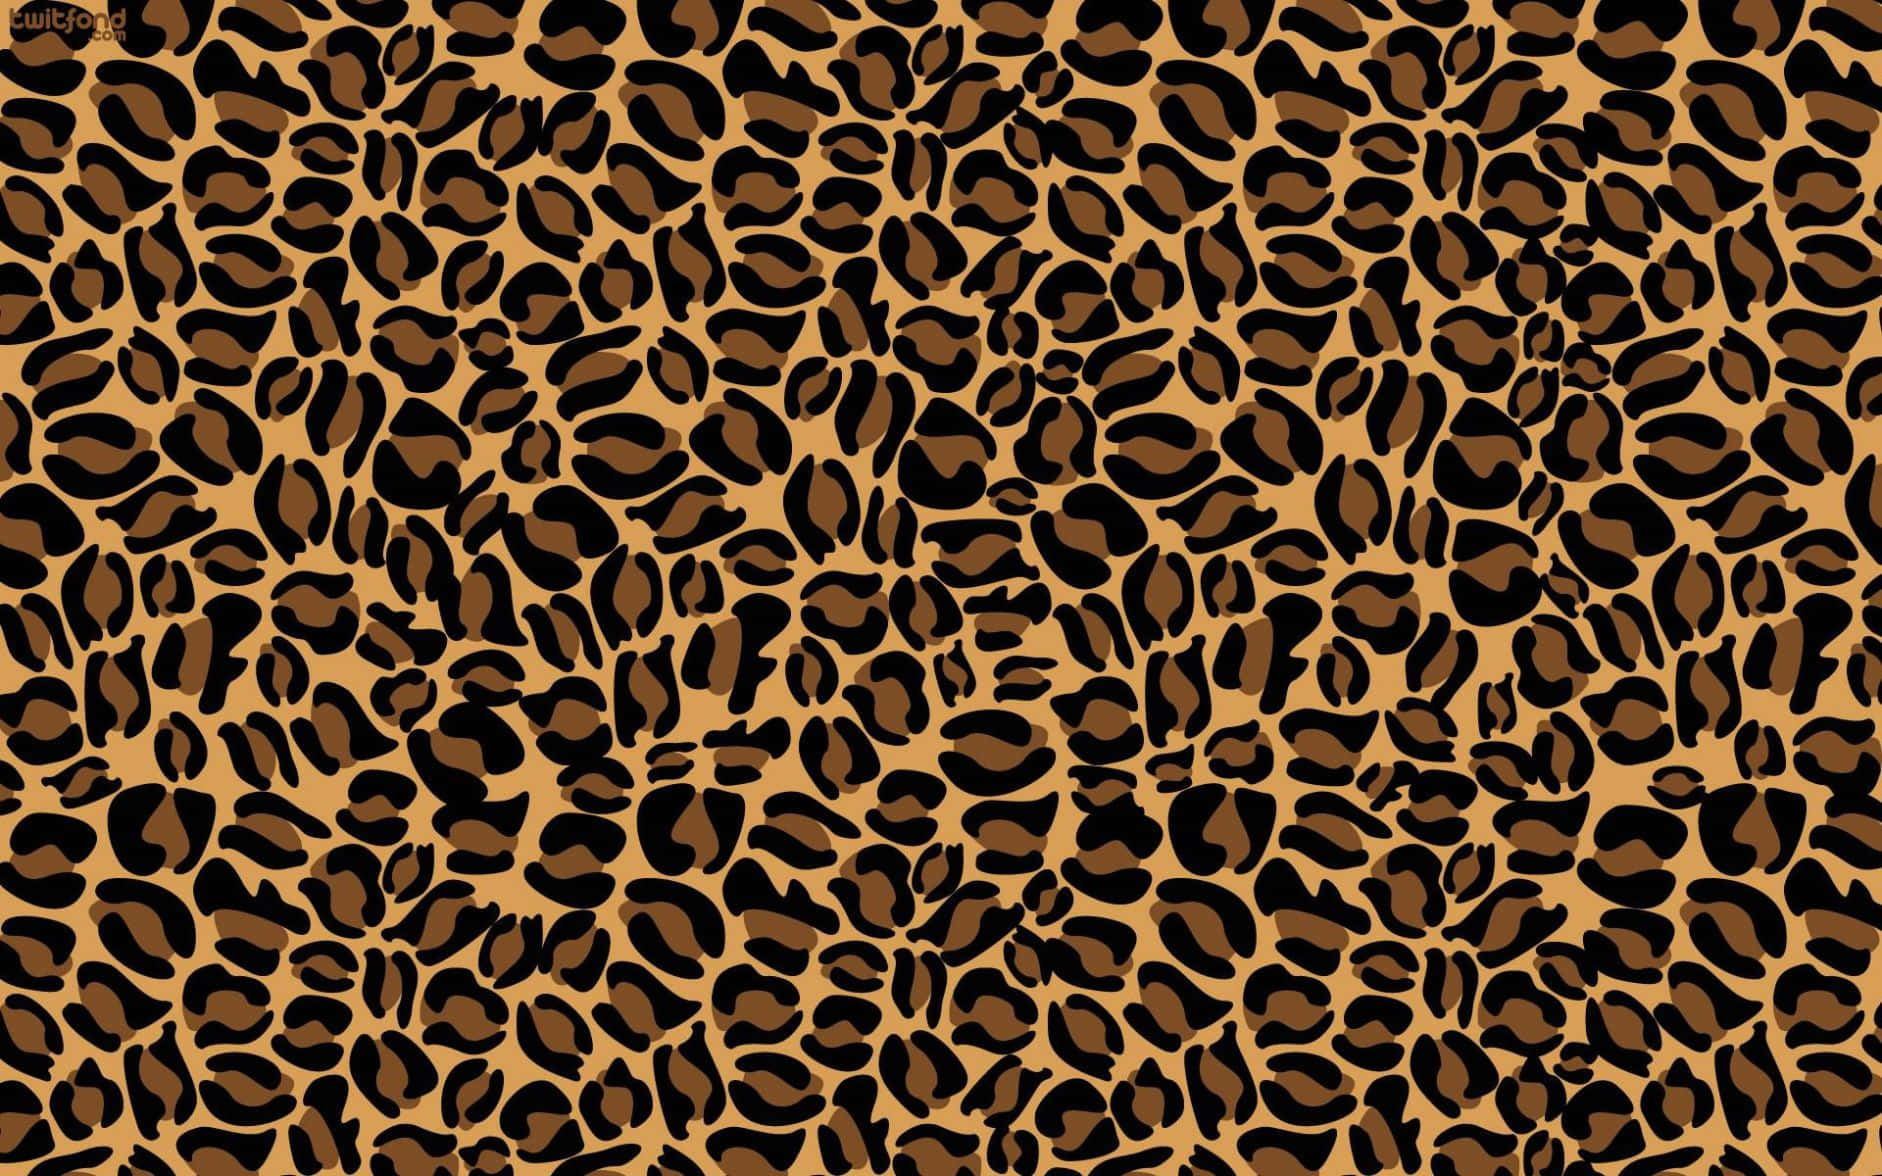 Stilvollerund Auffälliger Hintergrund Mit Leopardenmuster